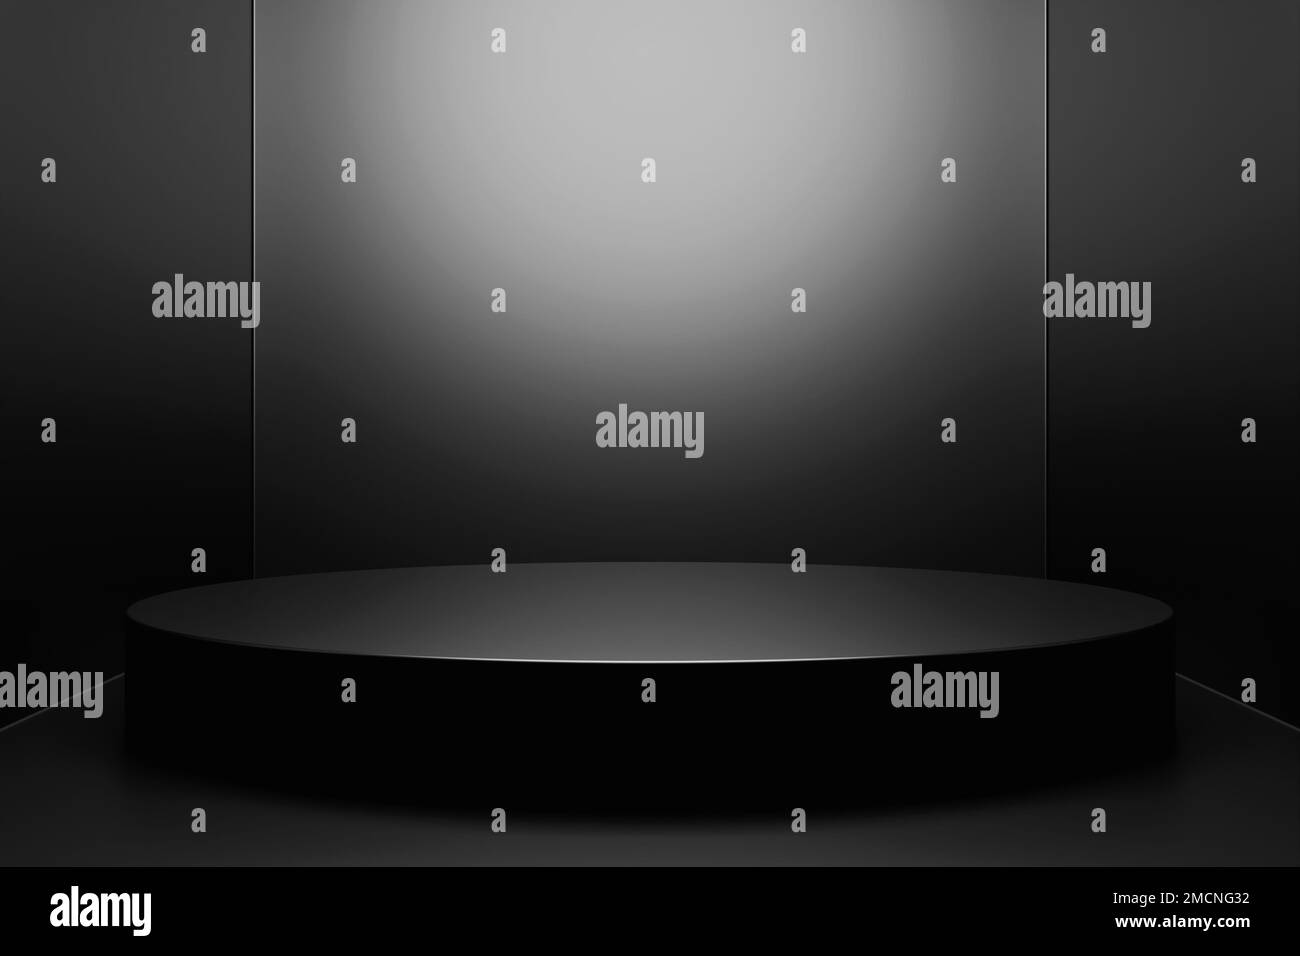 3d immagine di un nero podio su sfondo monocromo. Piedistallo vuoto per la cerimonia di premiazione Foto Stock